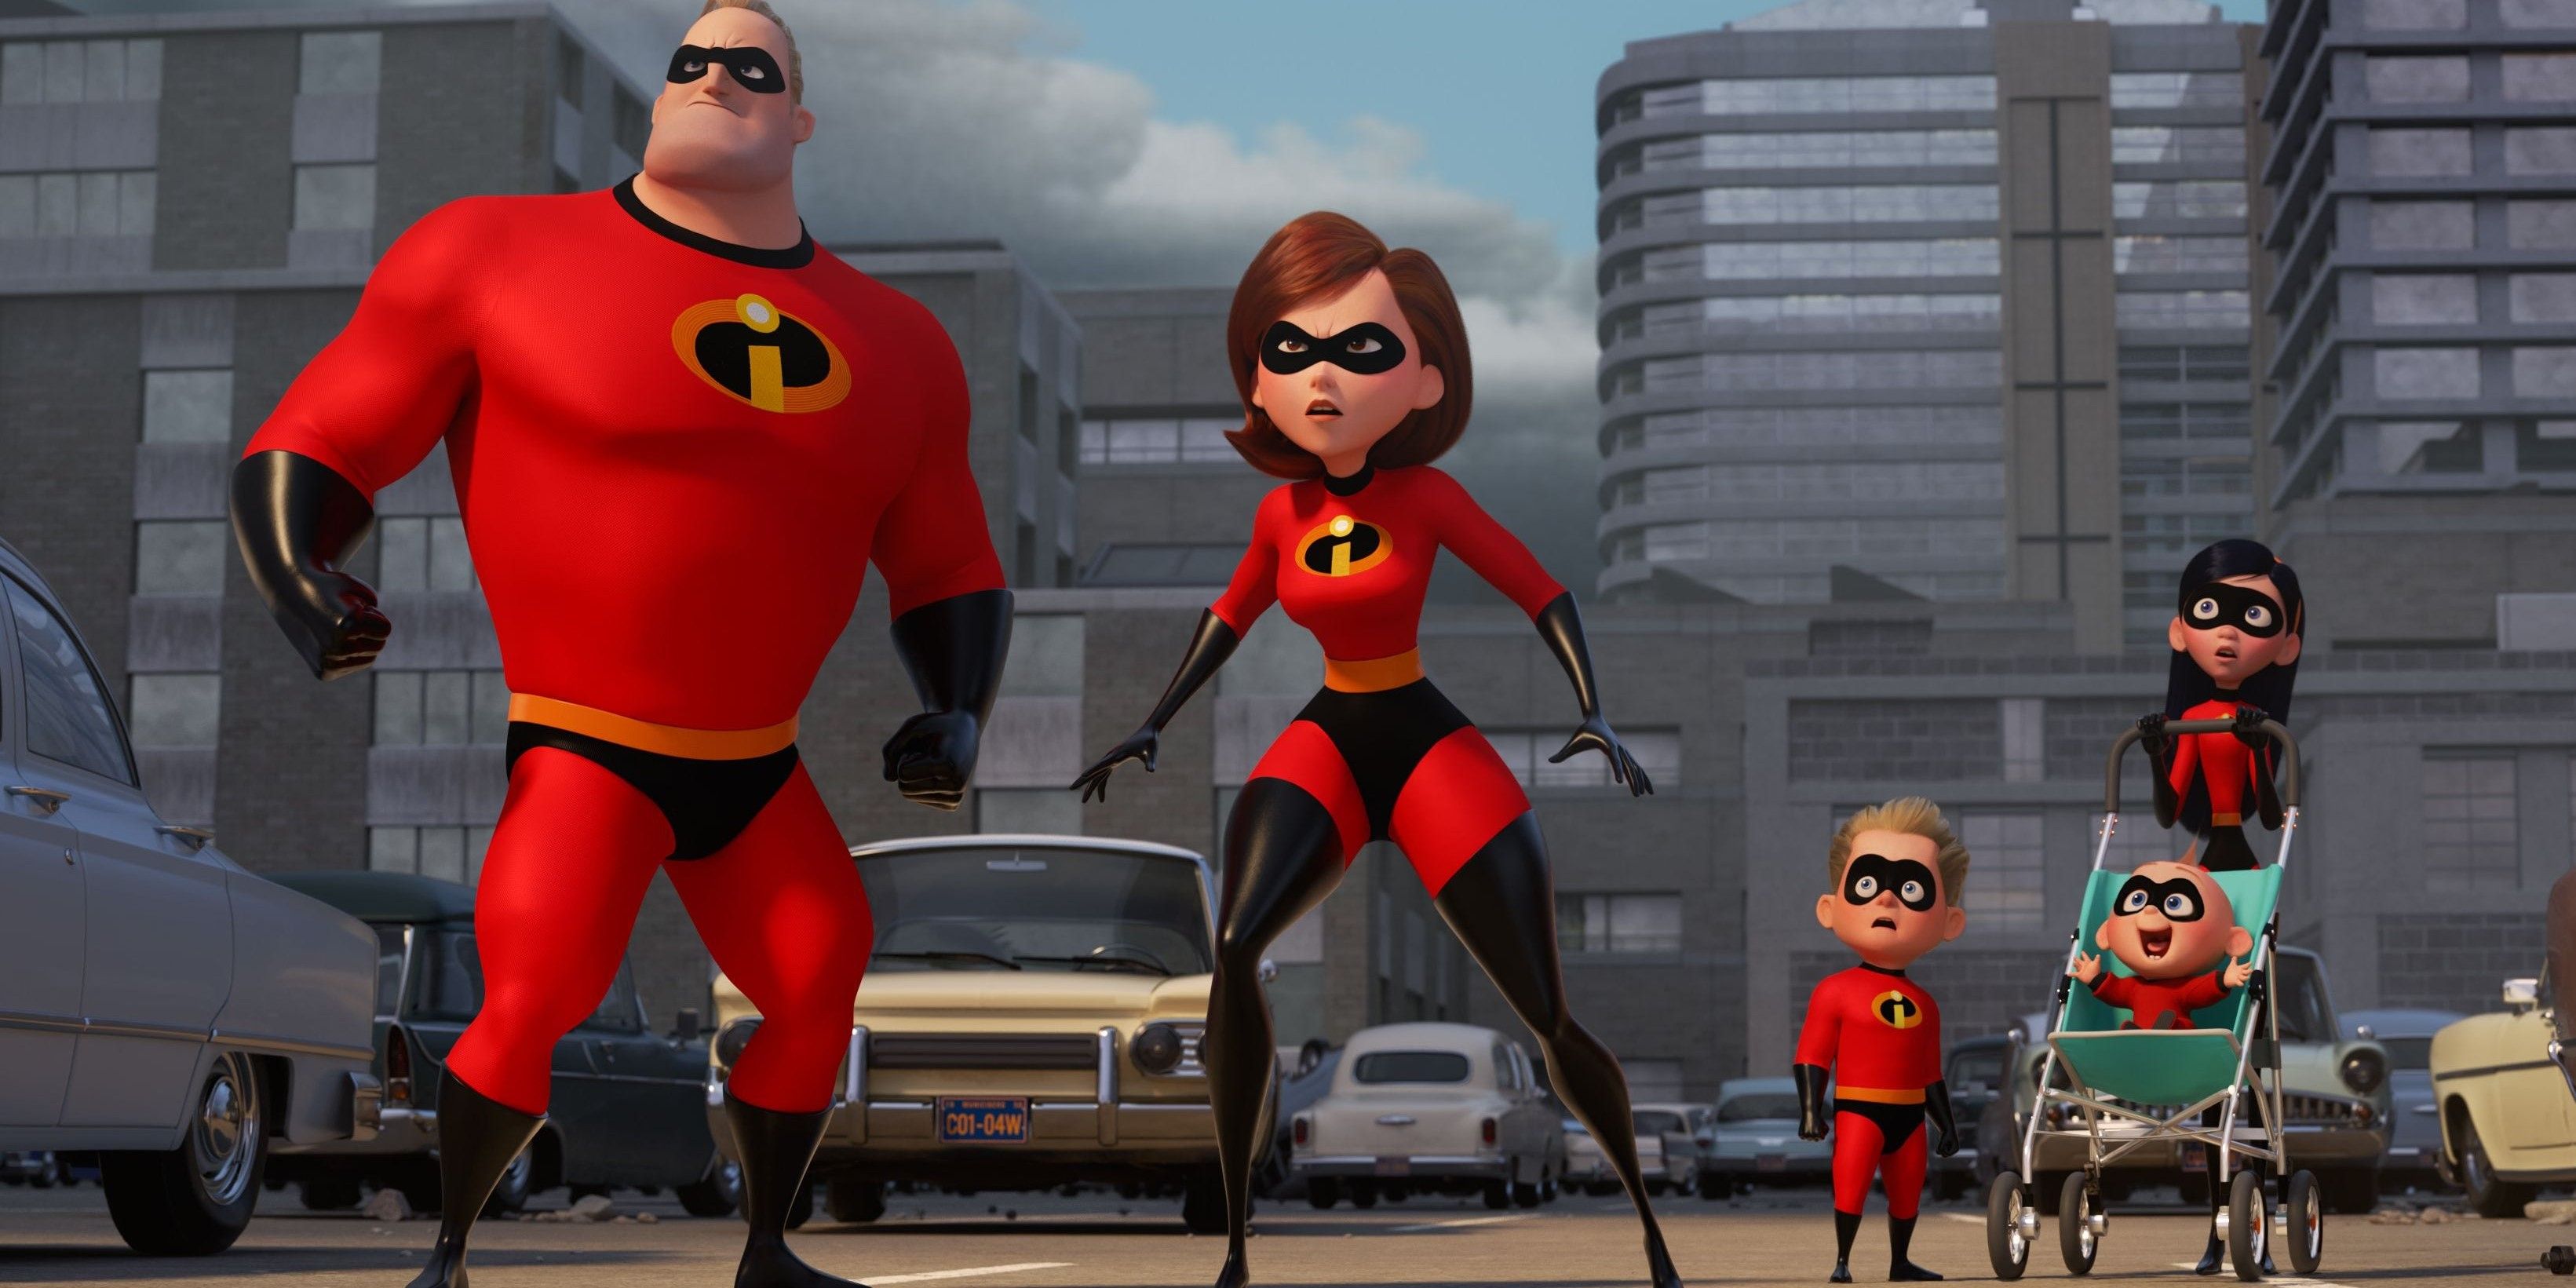 10 Best Animated Movie Franchises According To IMDb